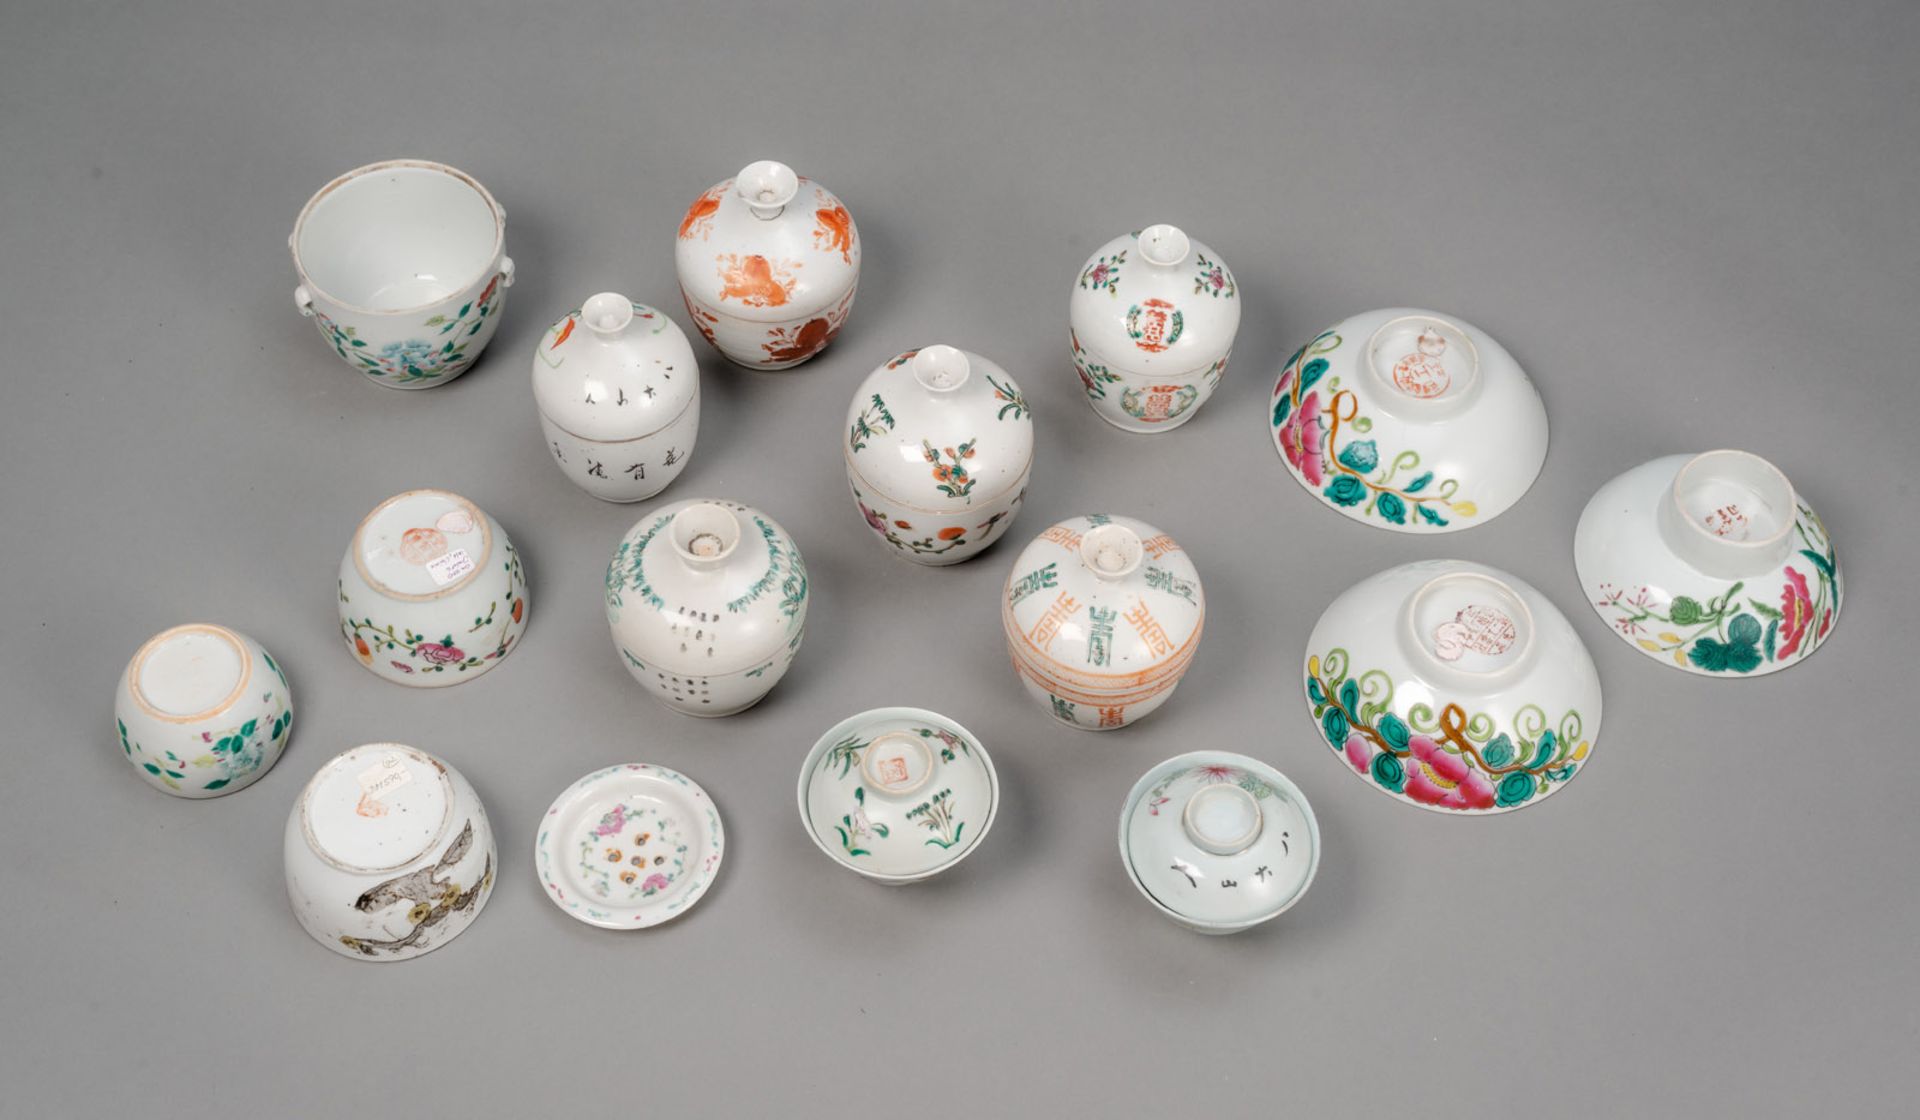 Acht 'Famille rose'-Deckelschalen und sieben weitere Schalen und Behälter, China, 19. Jh. - Bild 2 aus 3